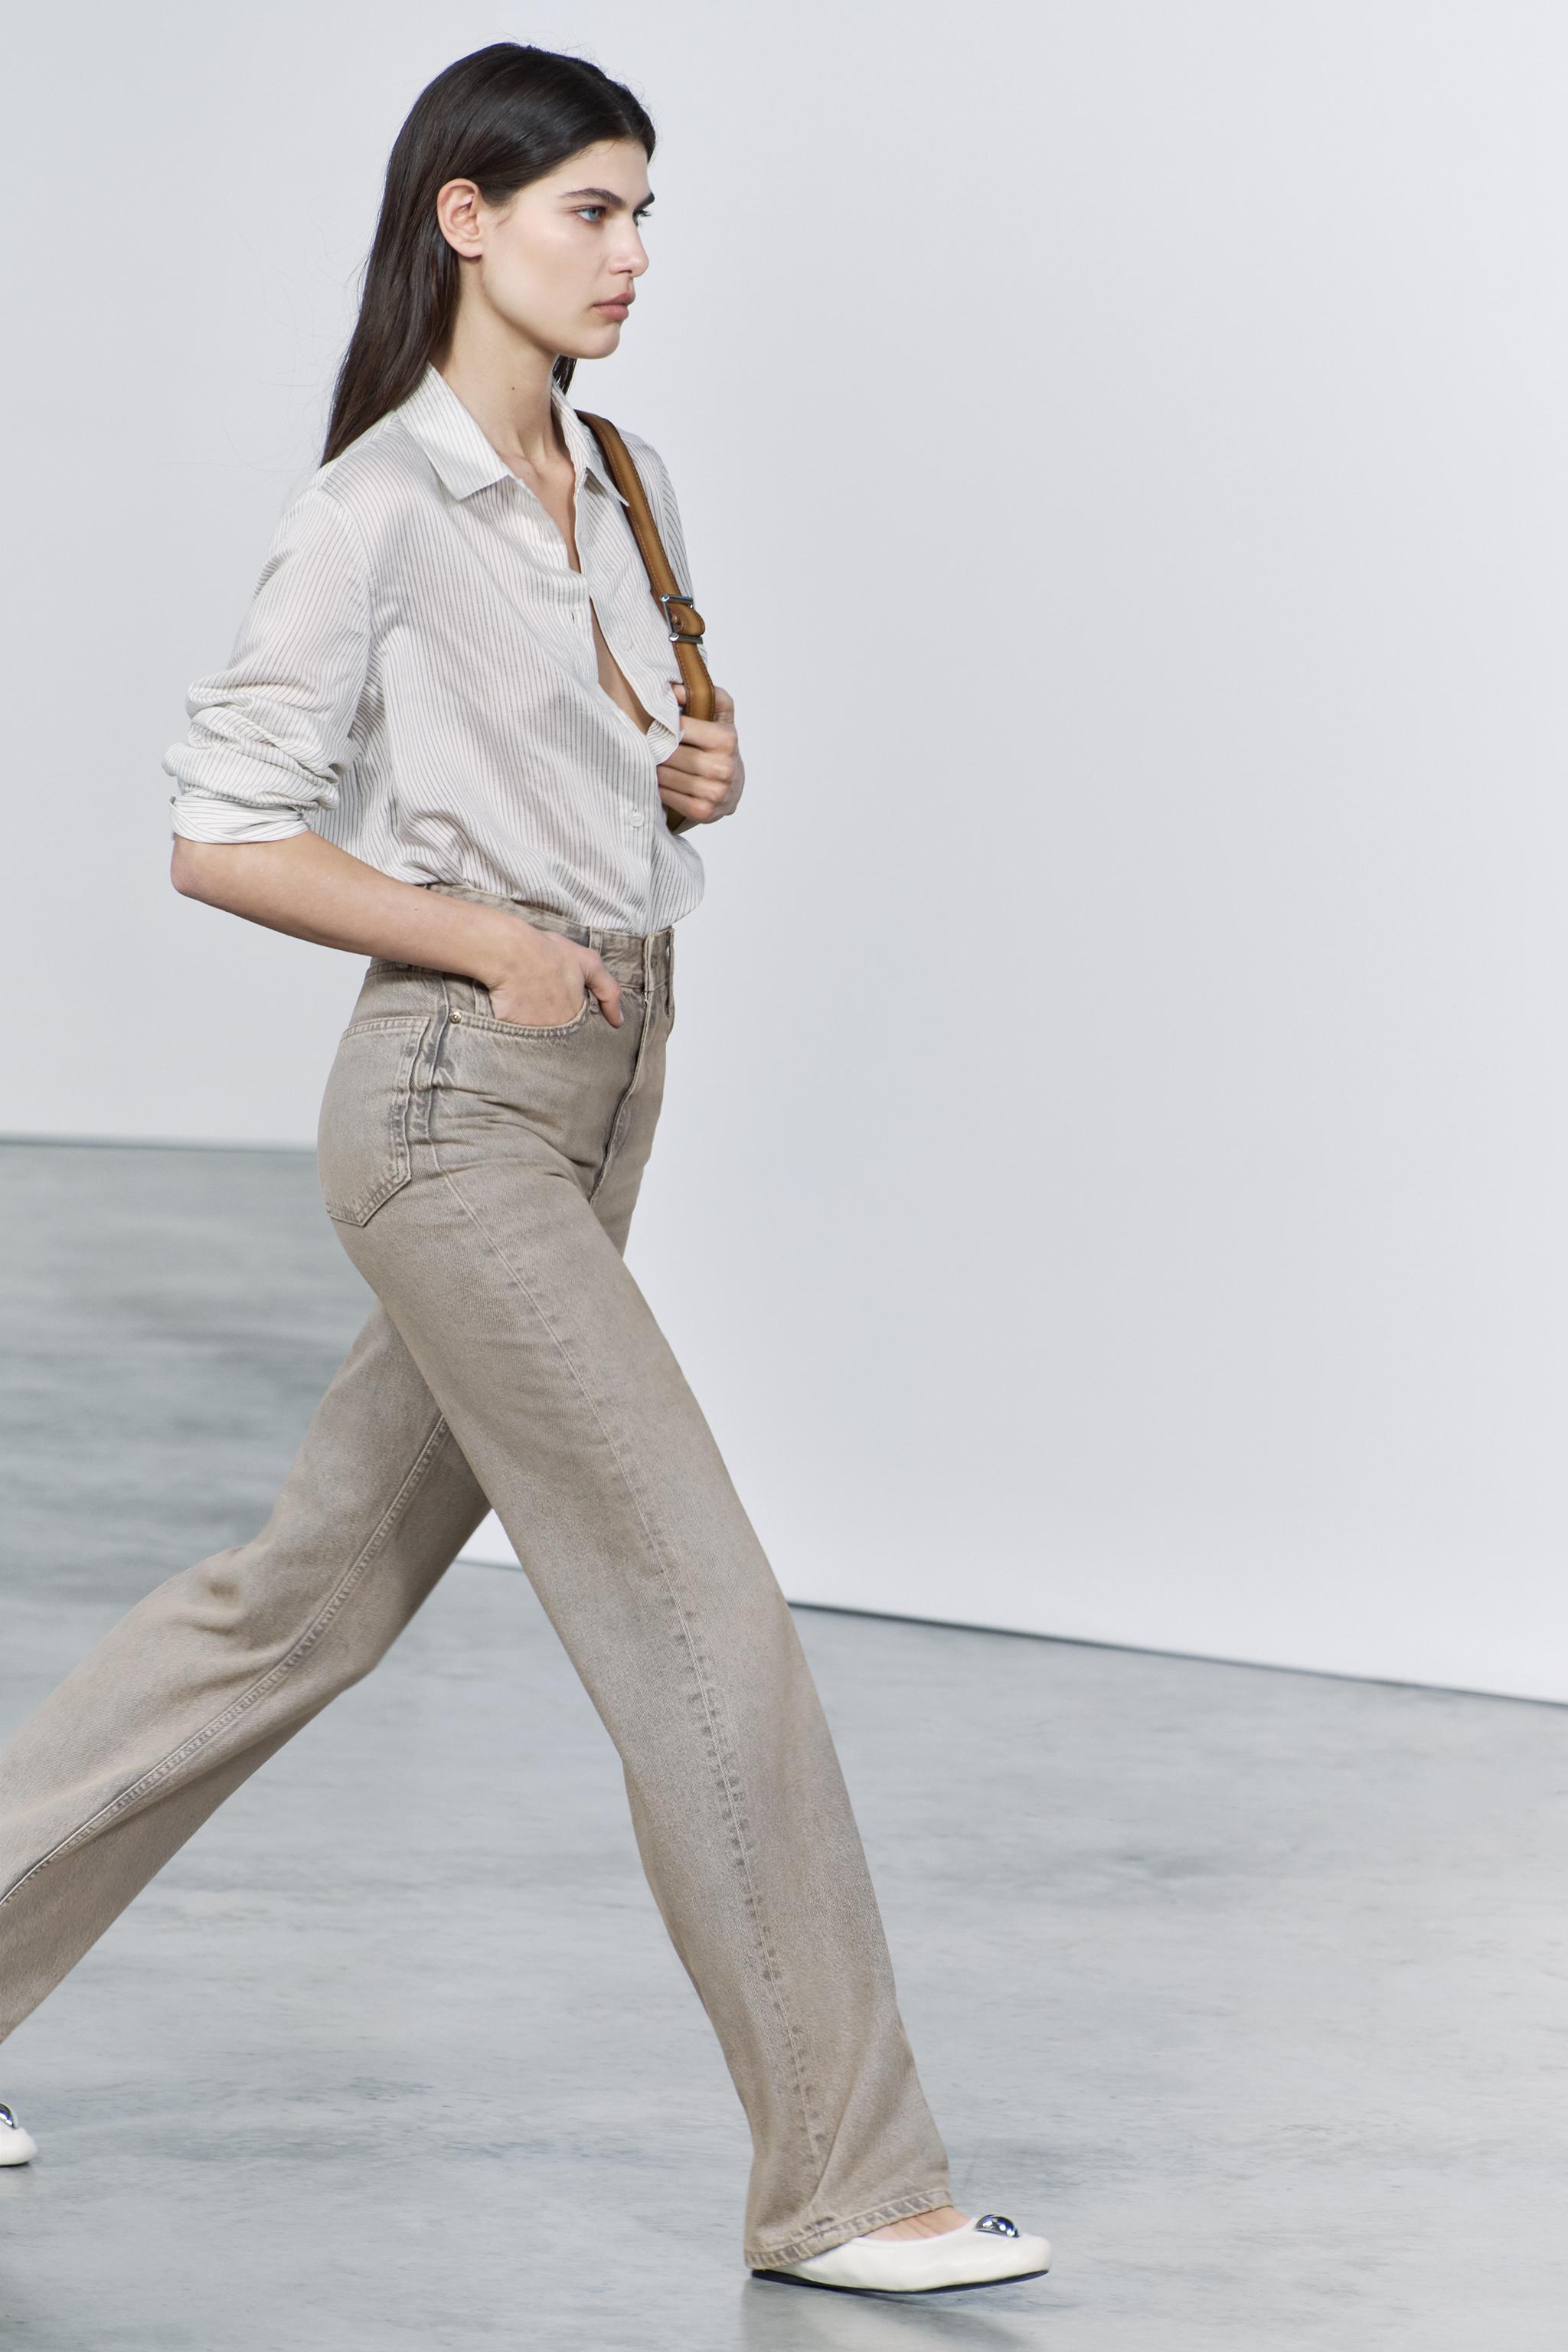 Las mejores ofertas en Pantalones beige Zara para Mujeres